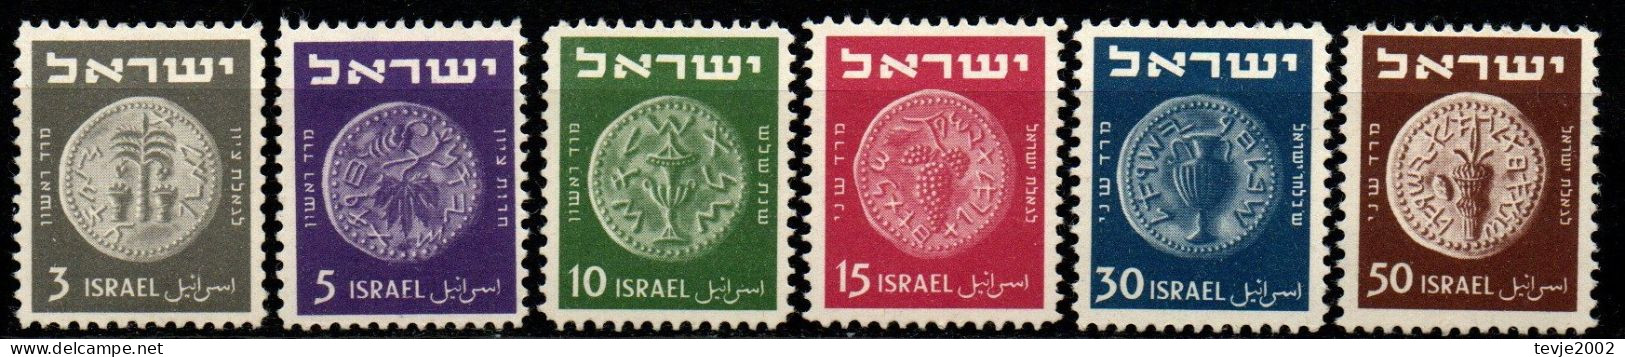 Israel 1949 - Mi.Nr. 22 - 27 - Postfrisch MNH - Ungebraucht (ohne Tabs)